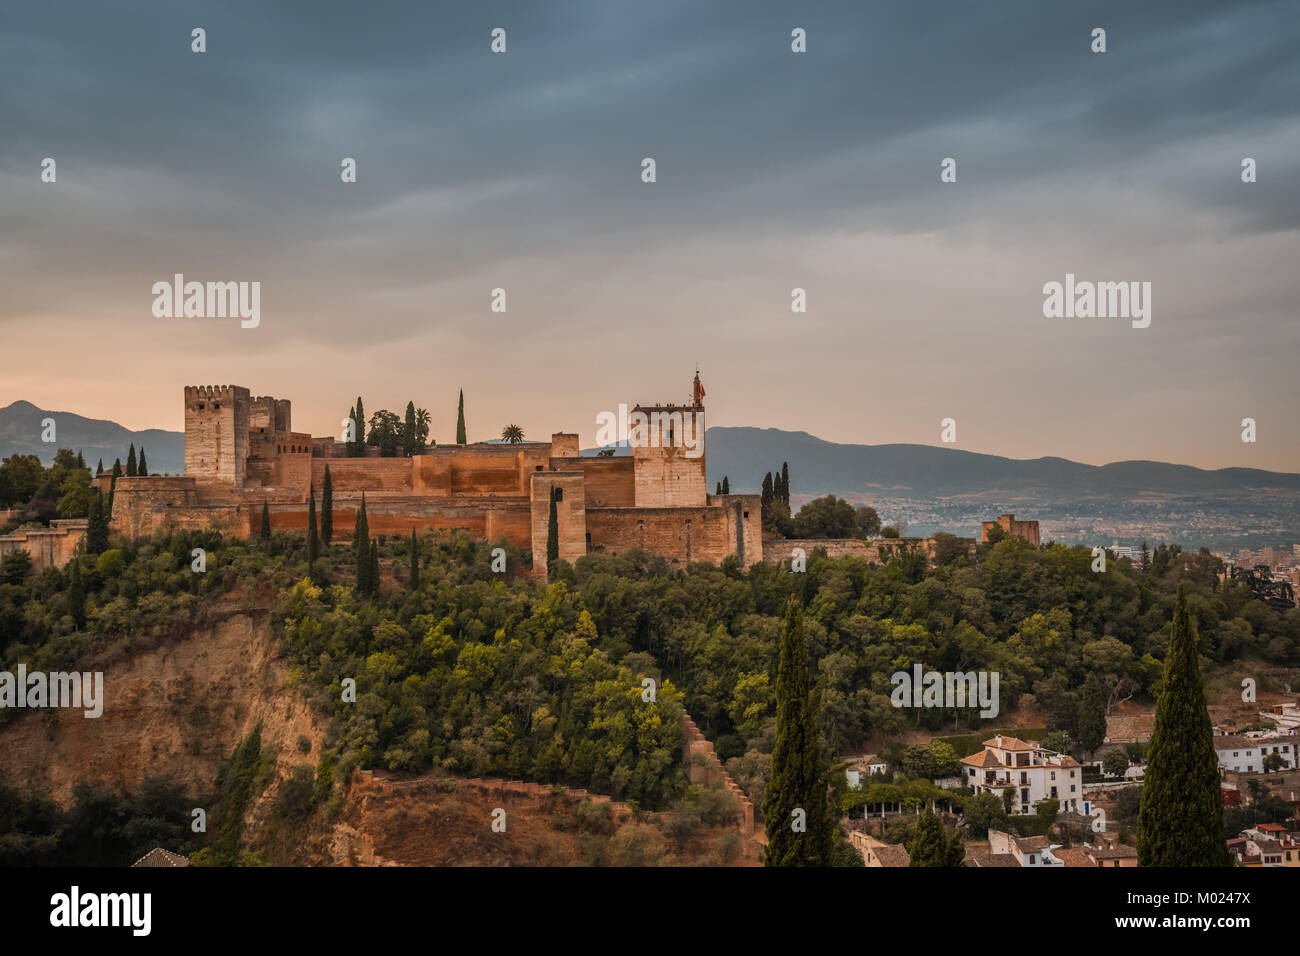 GRANADA, Andalusien/Spanien - 16. OKTOBER 2017: Blick auf die Alhambra VON DEM HÜGEL Stockfoto